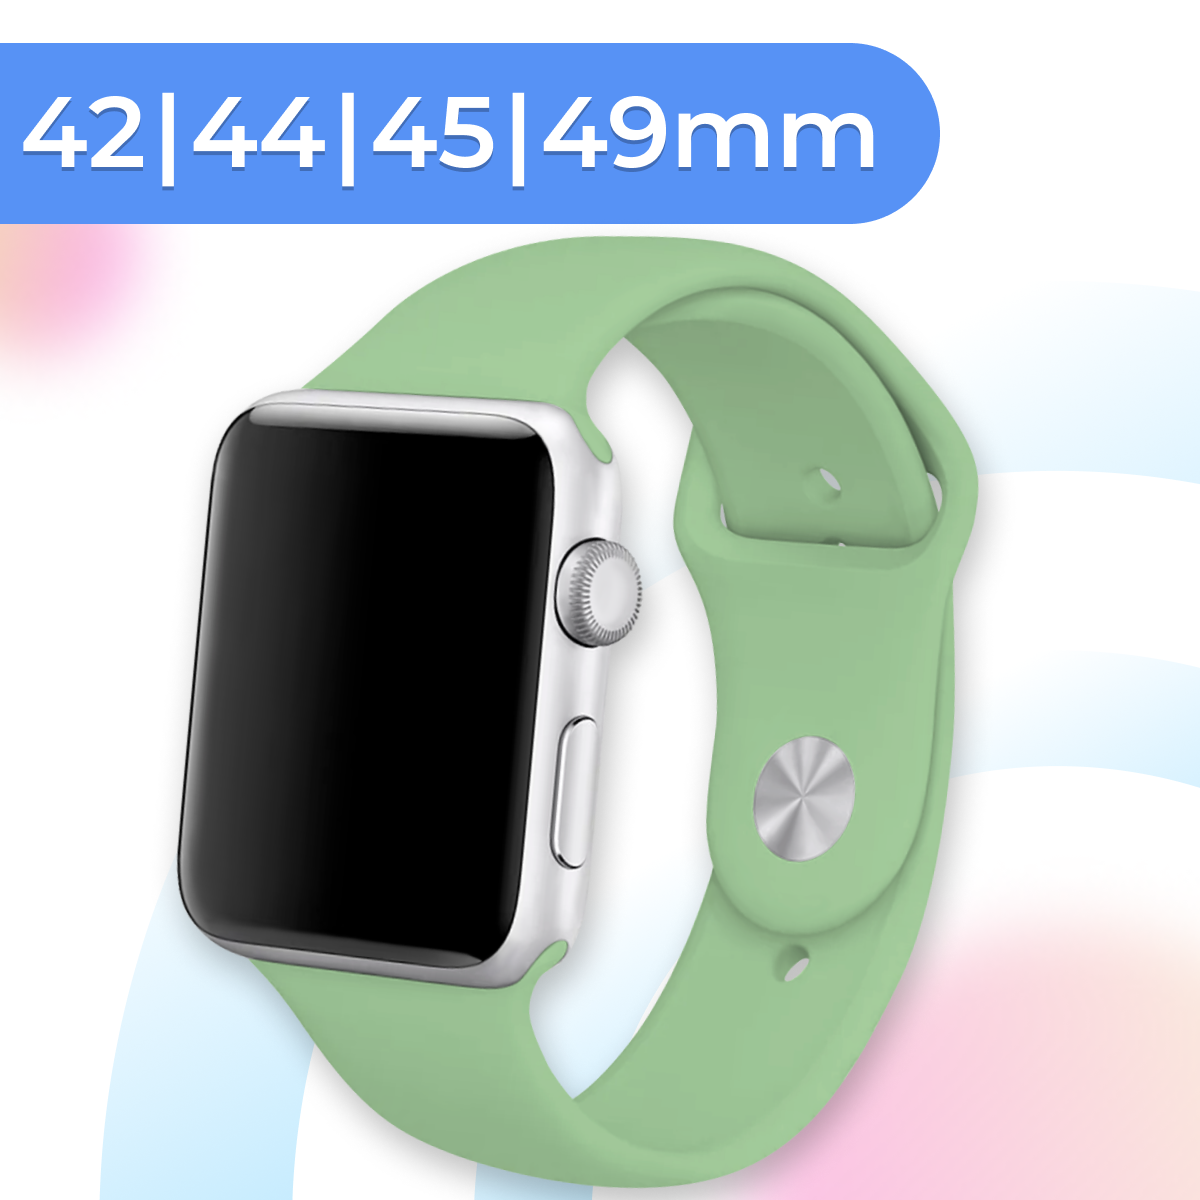 Силиконовый ремешок для умных часов Apple Watch 42-44-45-49 mm / Спортивный сменный браслет для смарт часов Эпл Вотч 1-9, SE серии / Mint